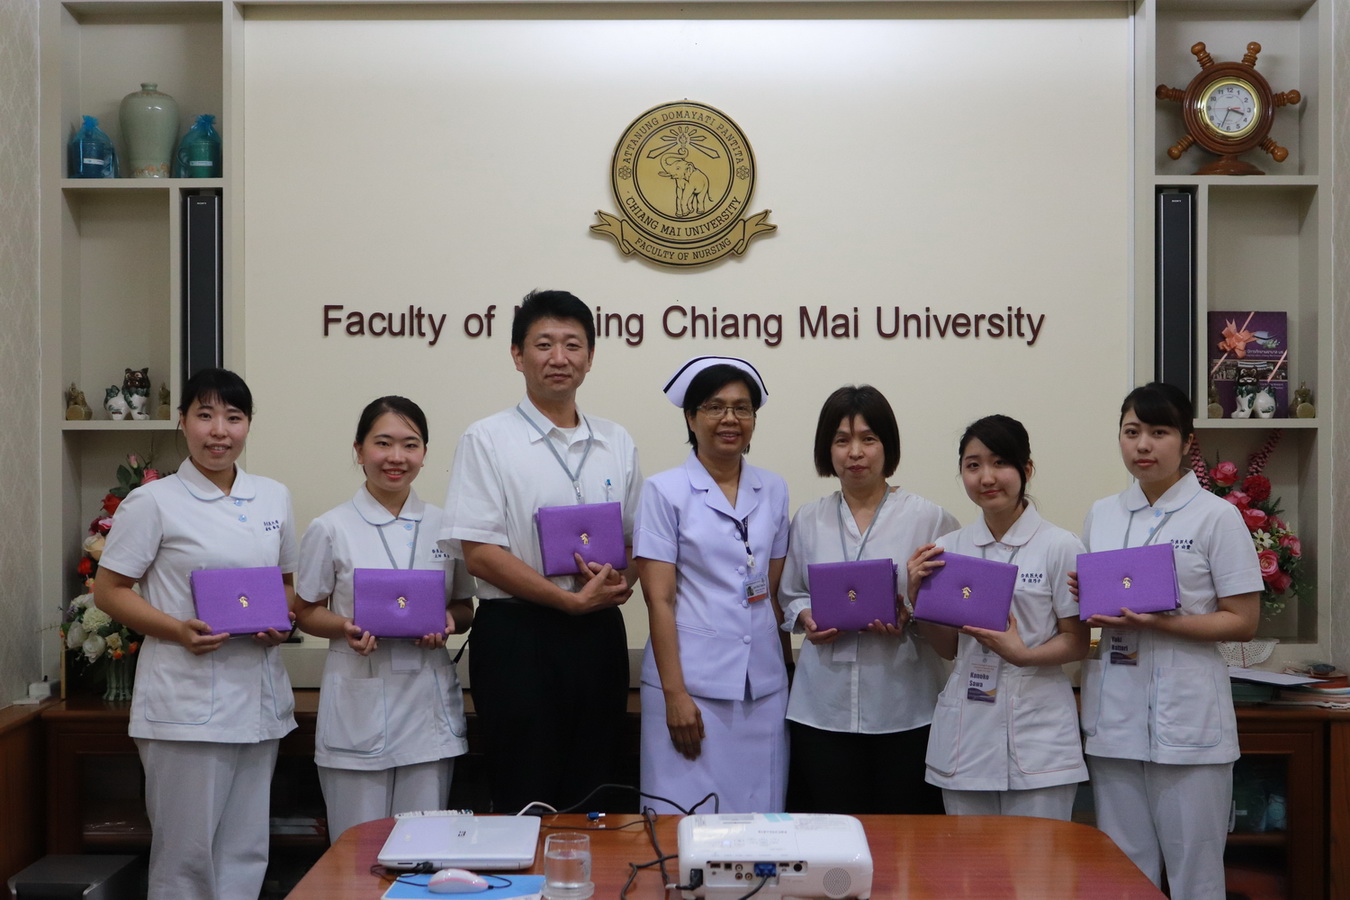 
	มอบวุฒิบัตรให้แก่นักศึกษาจาก Nara Medical University ประเทศญี่ปุ่น
